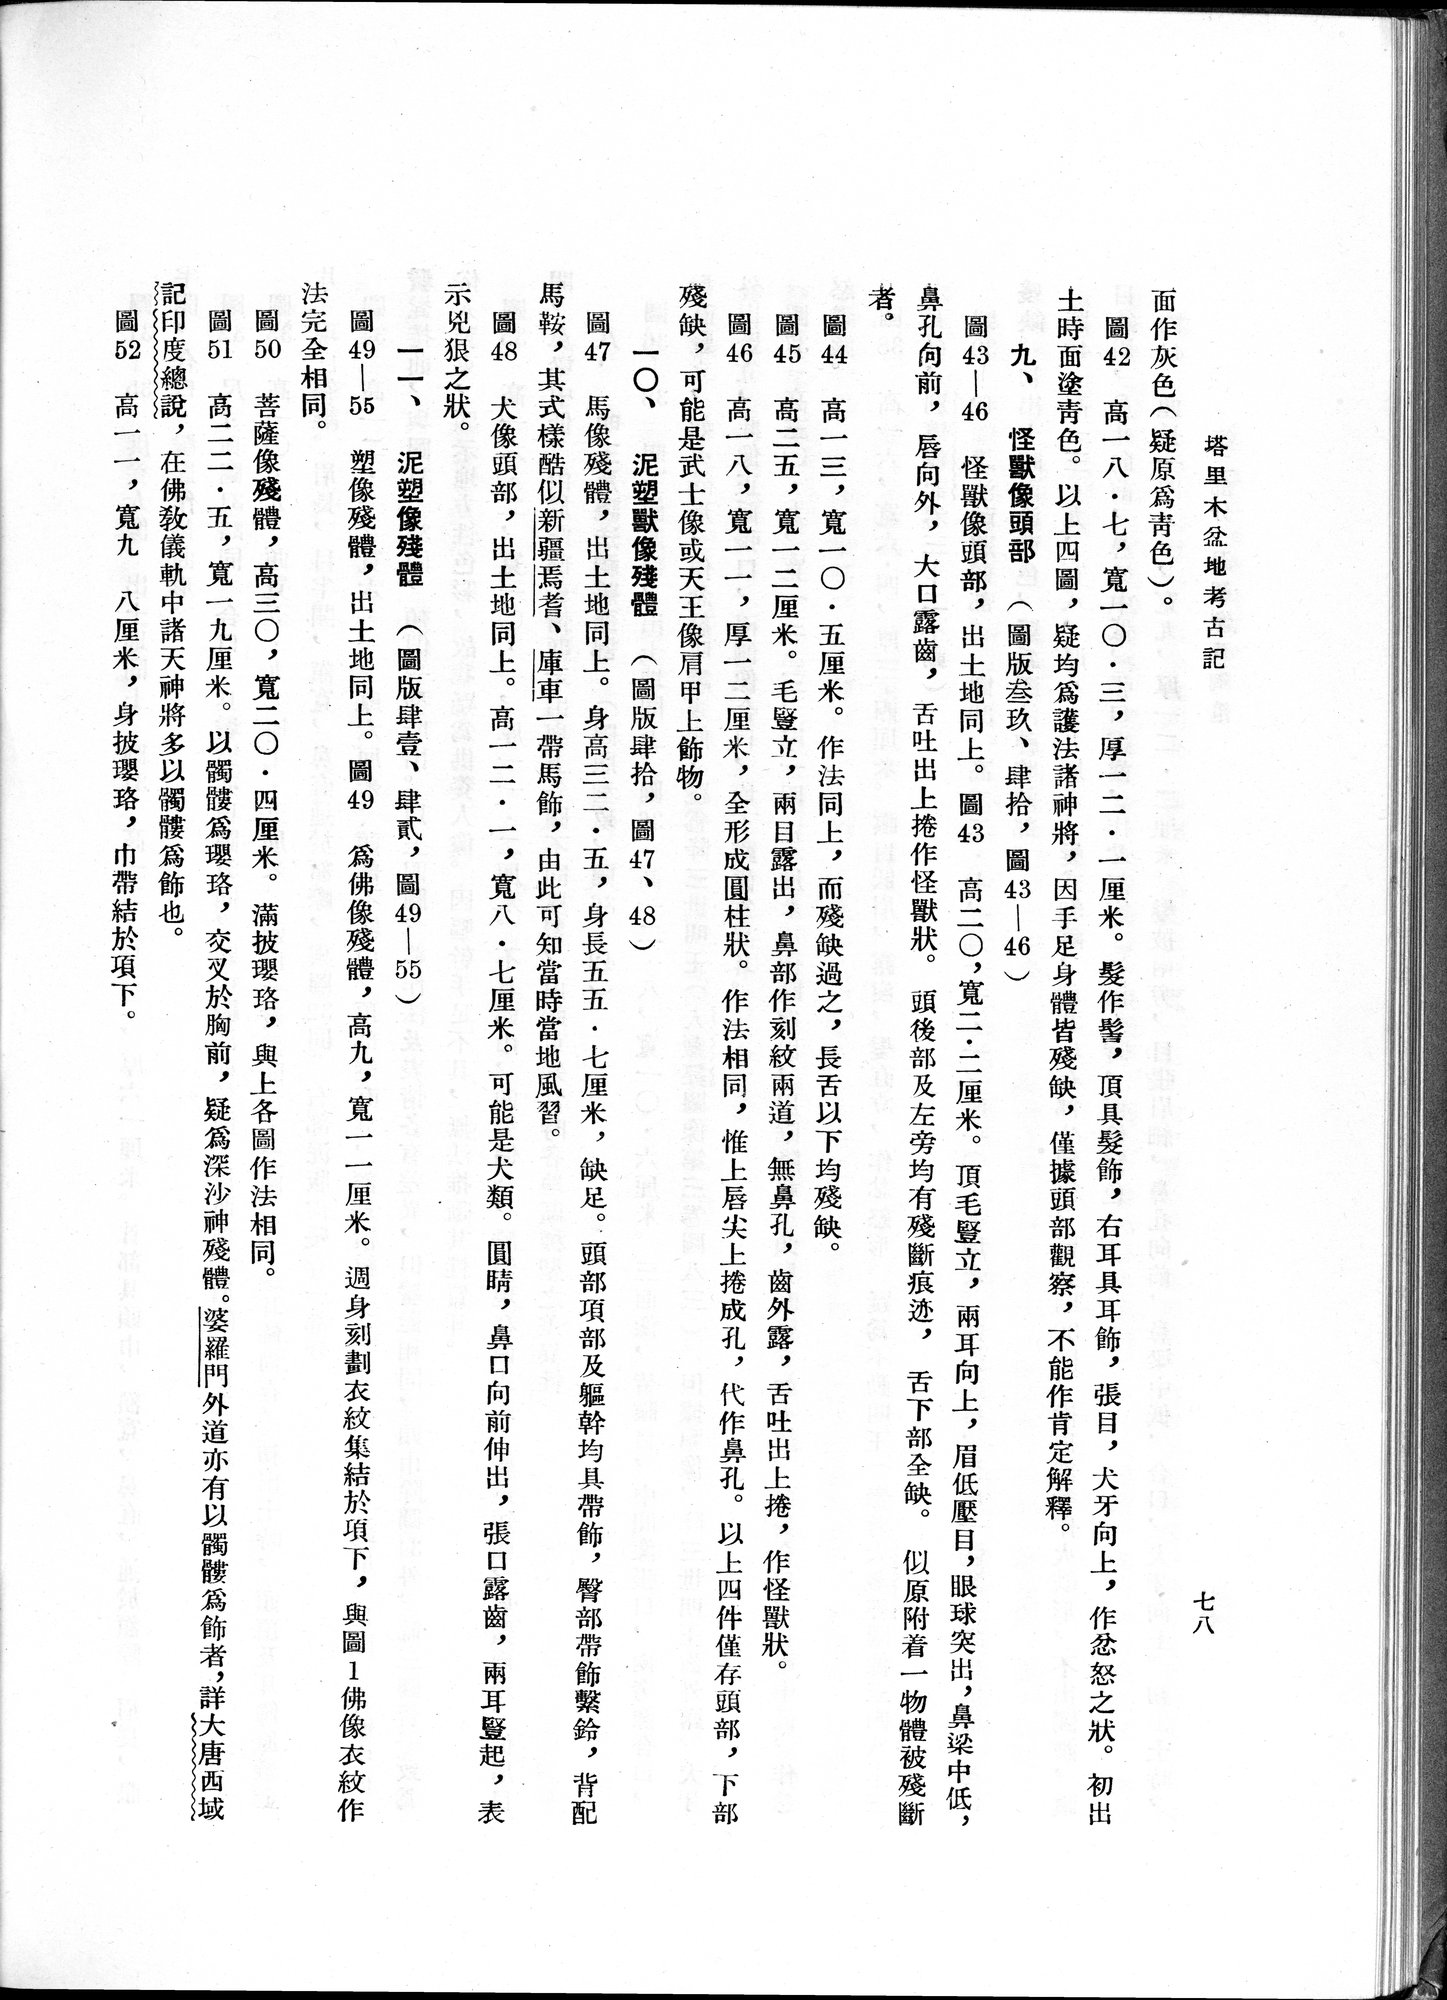 塔里木盆地考古記 : vol.1 / Page 142 (Grayscale High Resolution Image)